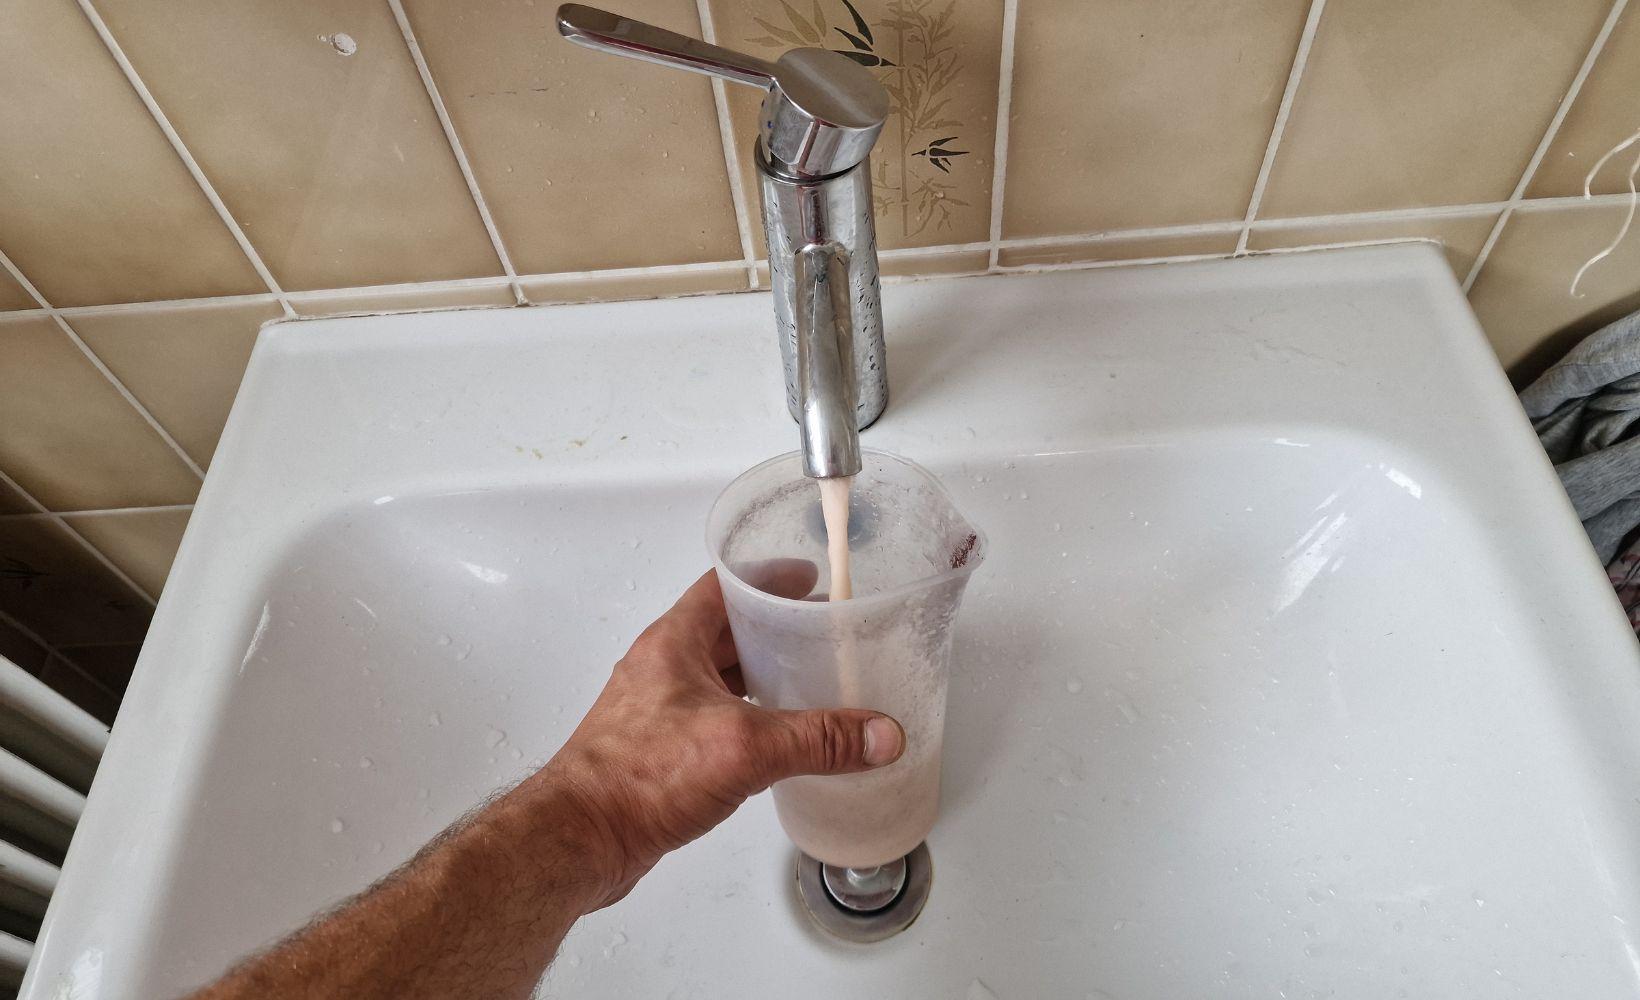 Comment resoudre un probleme de pression d eau chaude